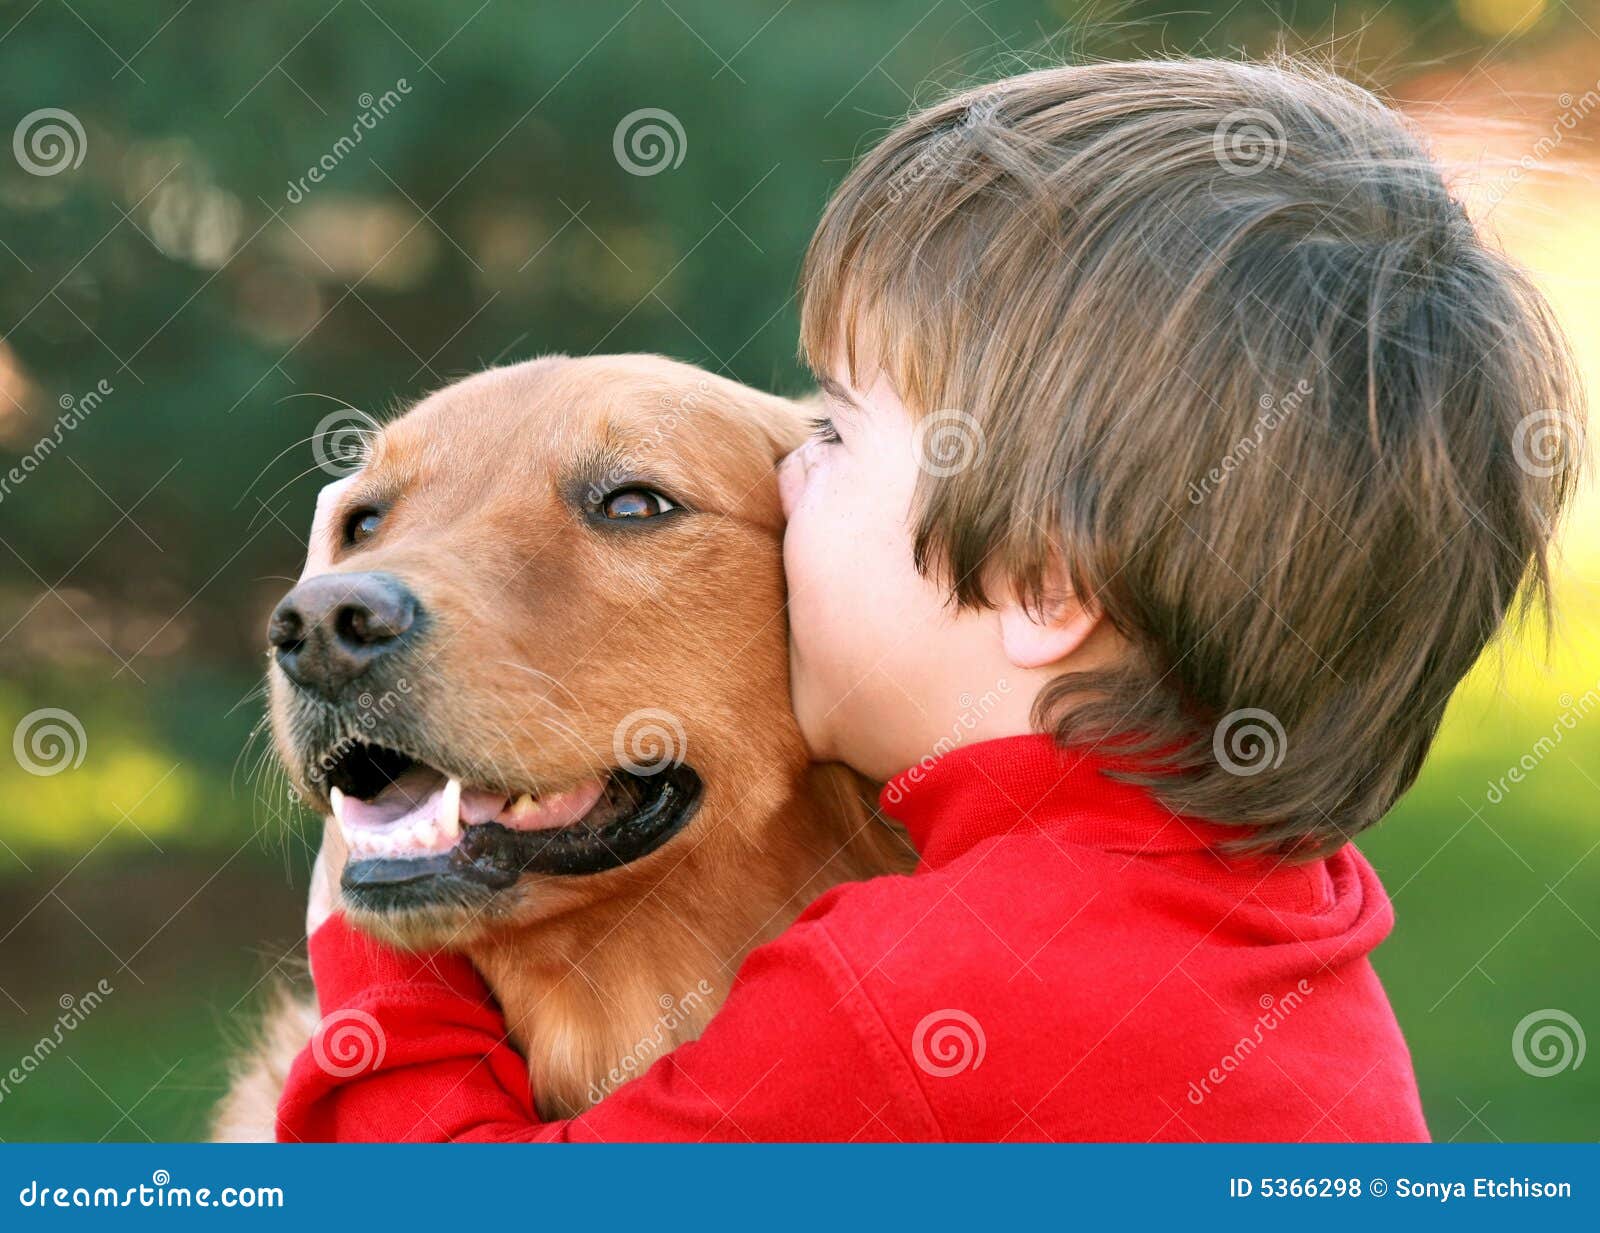 boy kissing dog